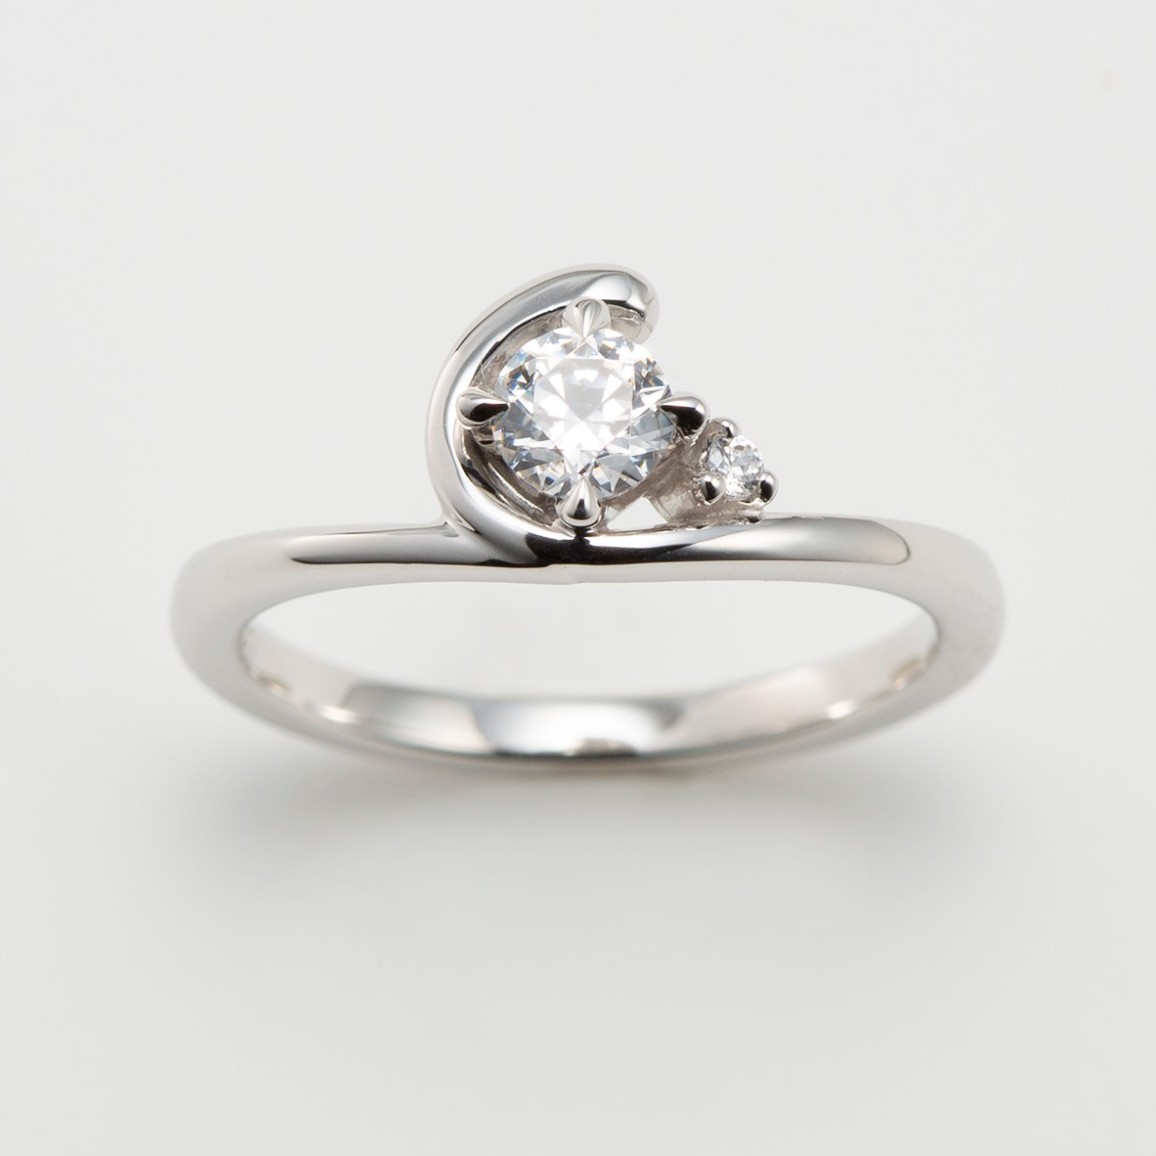 デザインの種類が豊富なオーダーメイドの婚約指輪